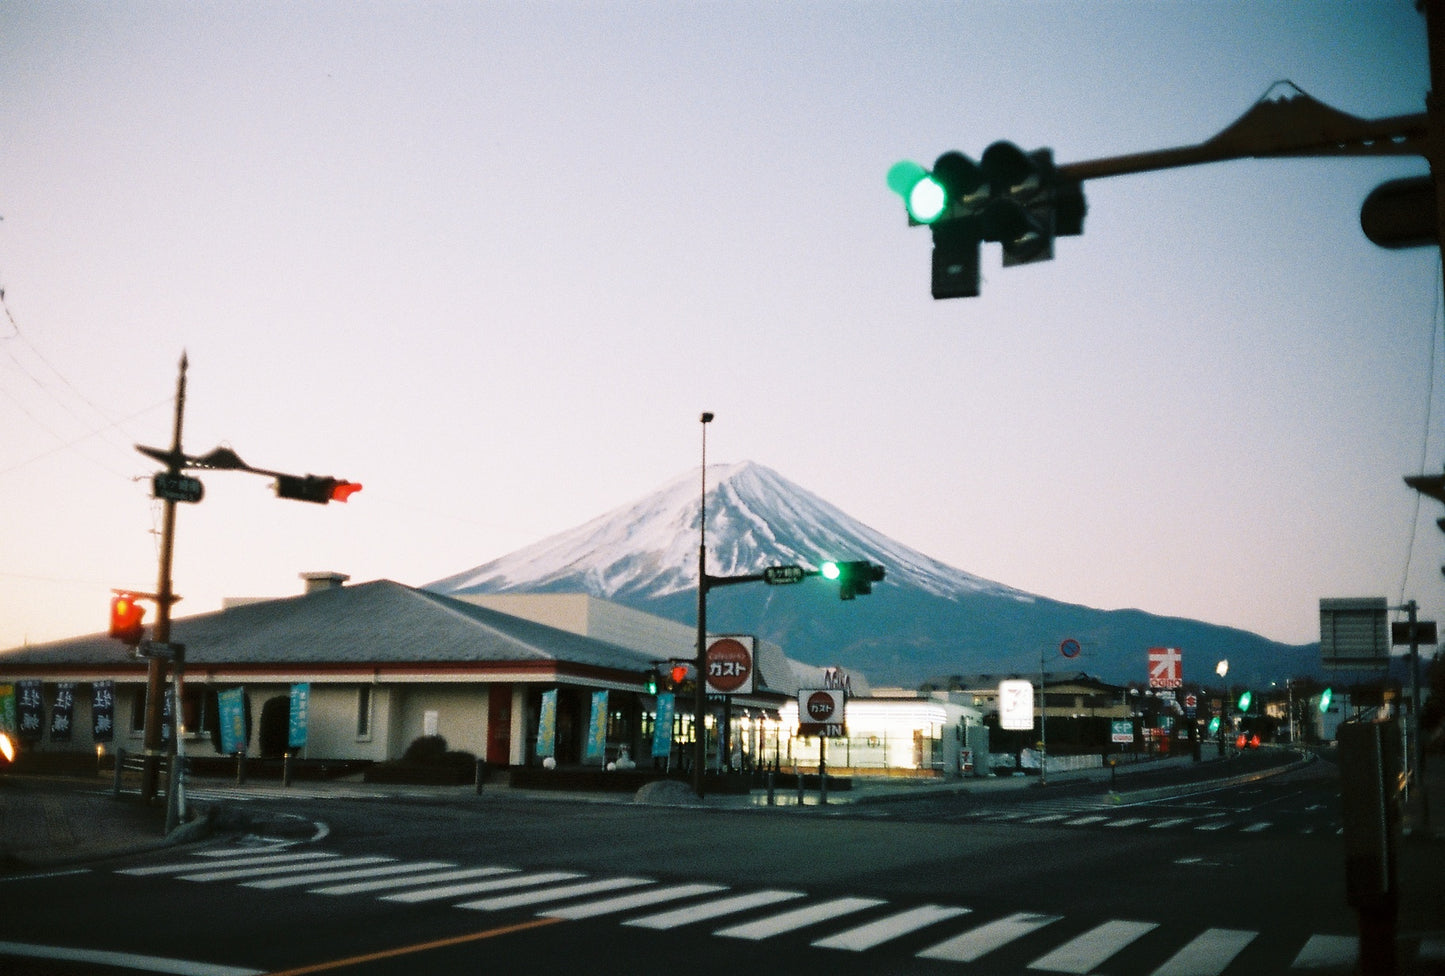 38 Photographs, 4 Weeks in Japan